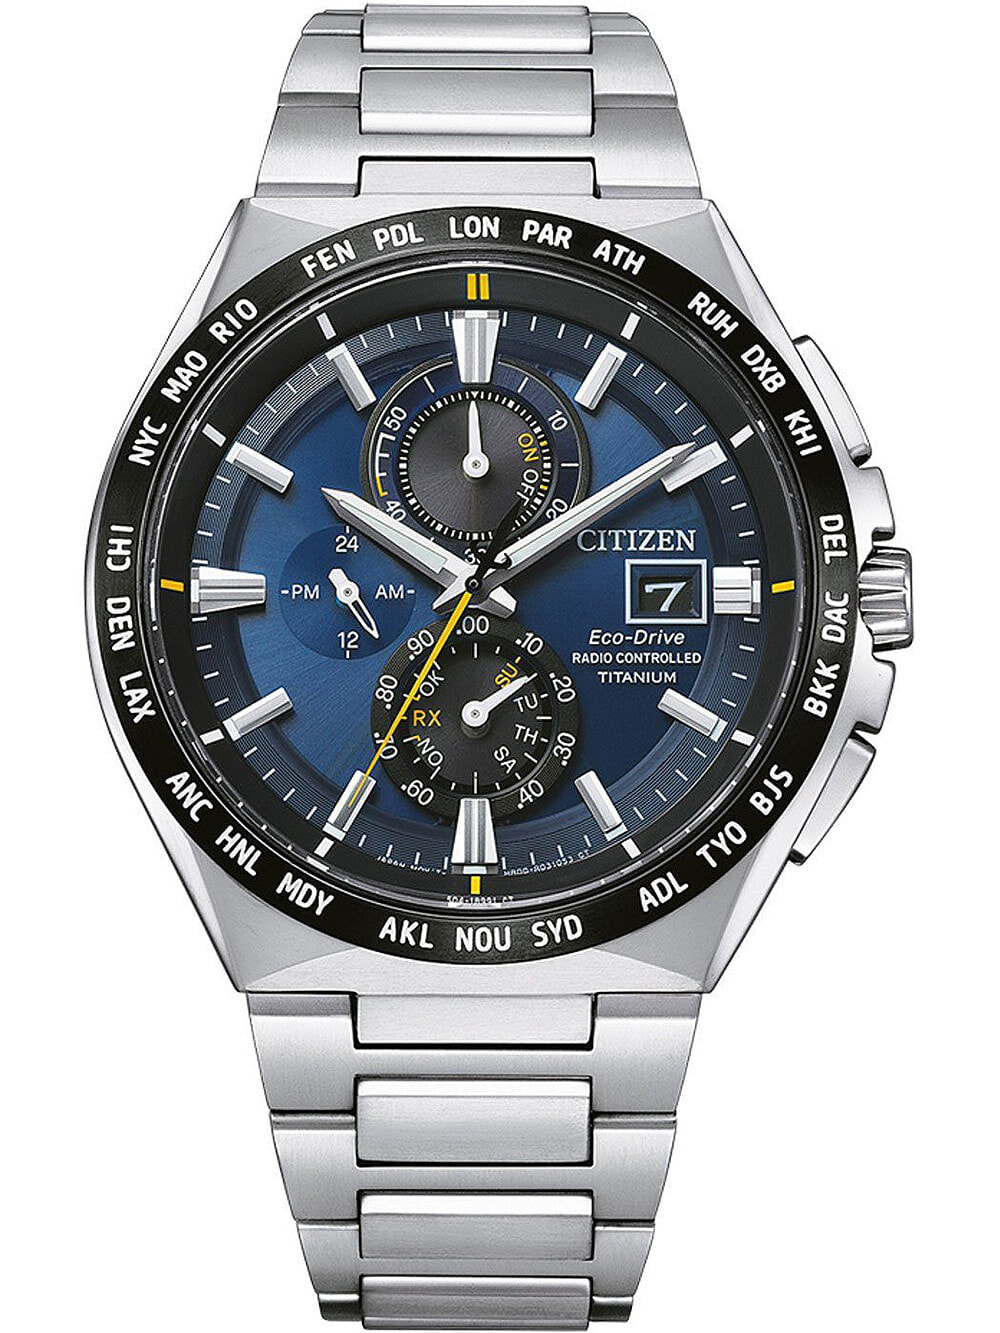 Мужские наручные часы с серебряным браслетом Citizen AT8234-85L Eco-Drive radio controlled Titanium 40mm 10ATM